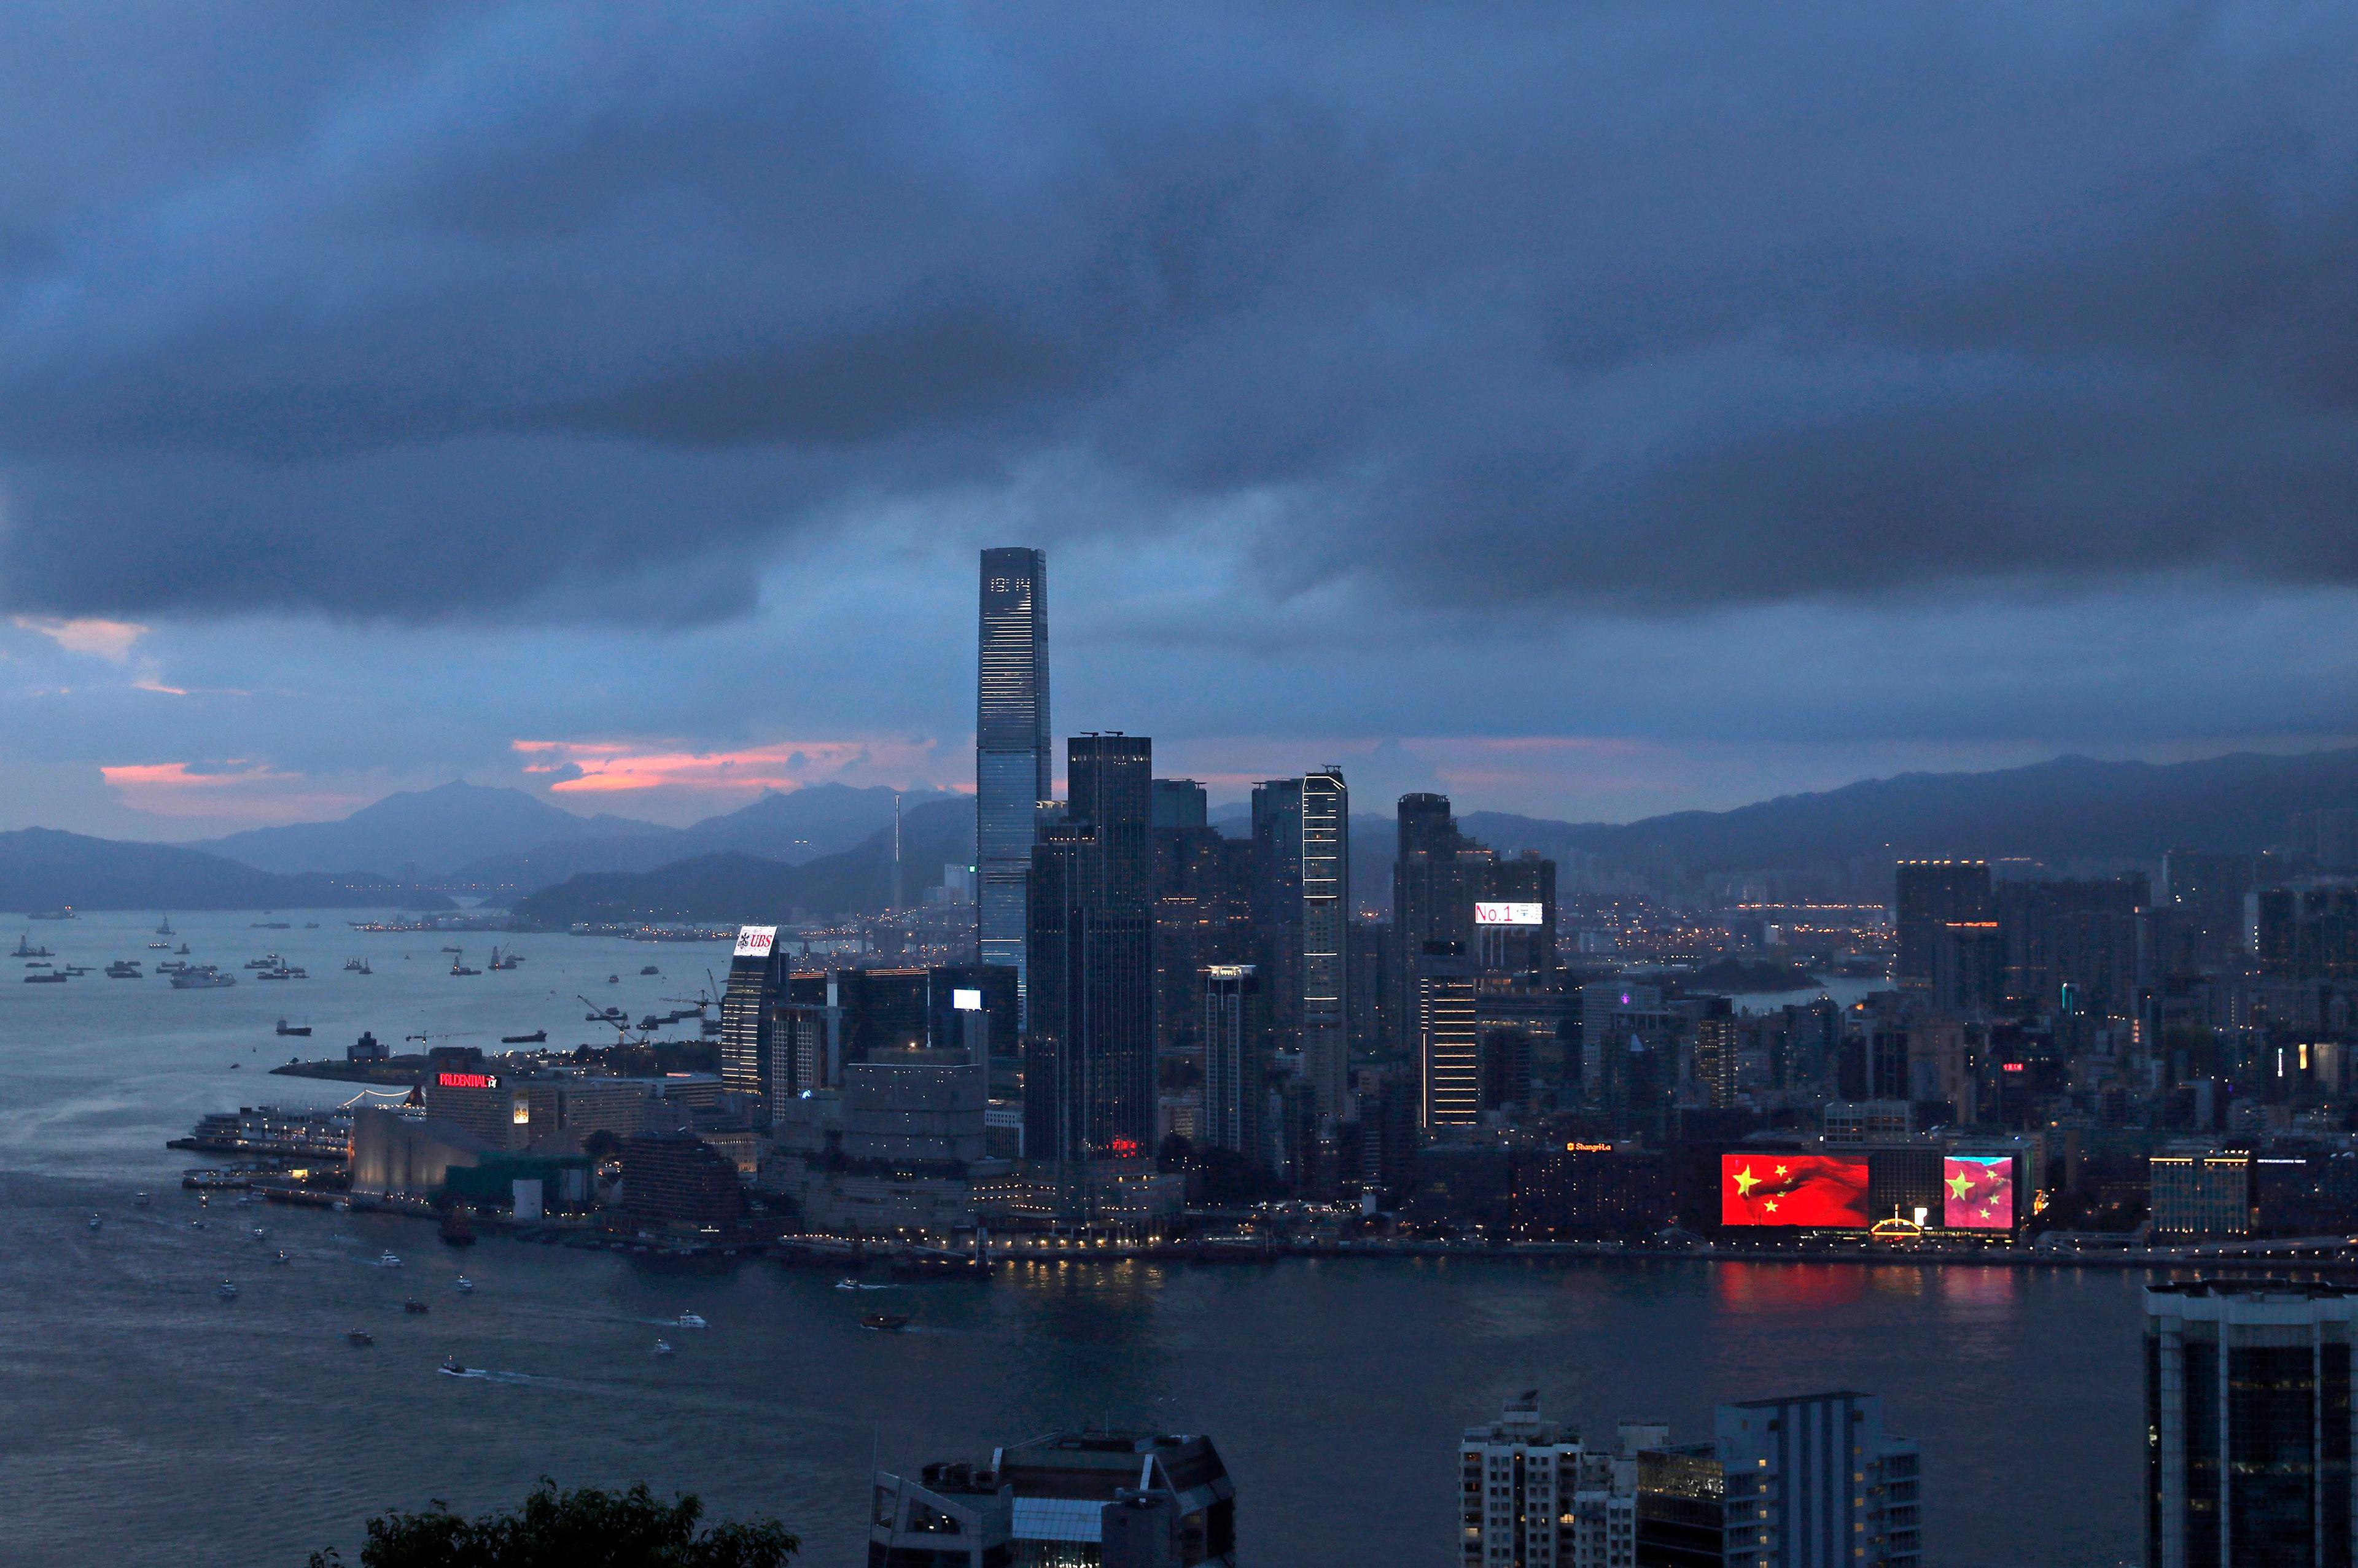 Ett möte ägde rum på ett hotell i Hong Kong, enligt ett uttalande från det amerikanska justitiedepartementet. Arkivbild. Foto: Vincent Yu/AP/TT